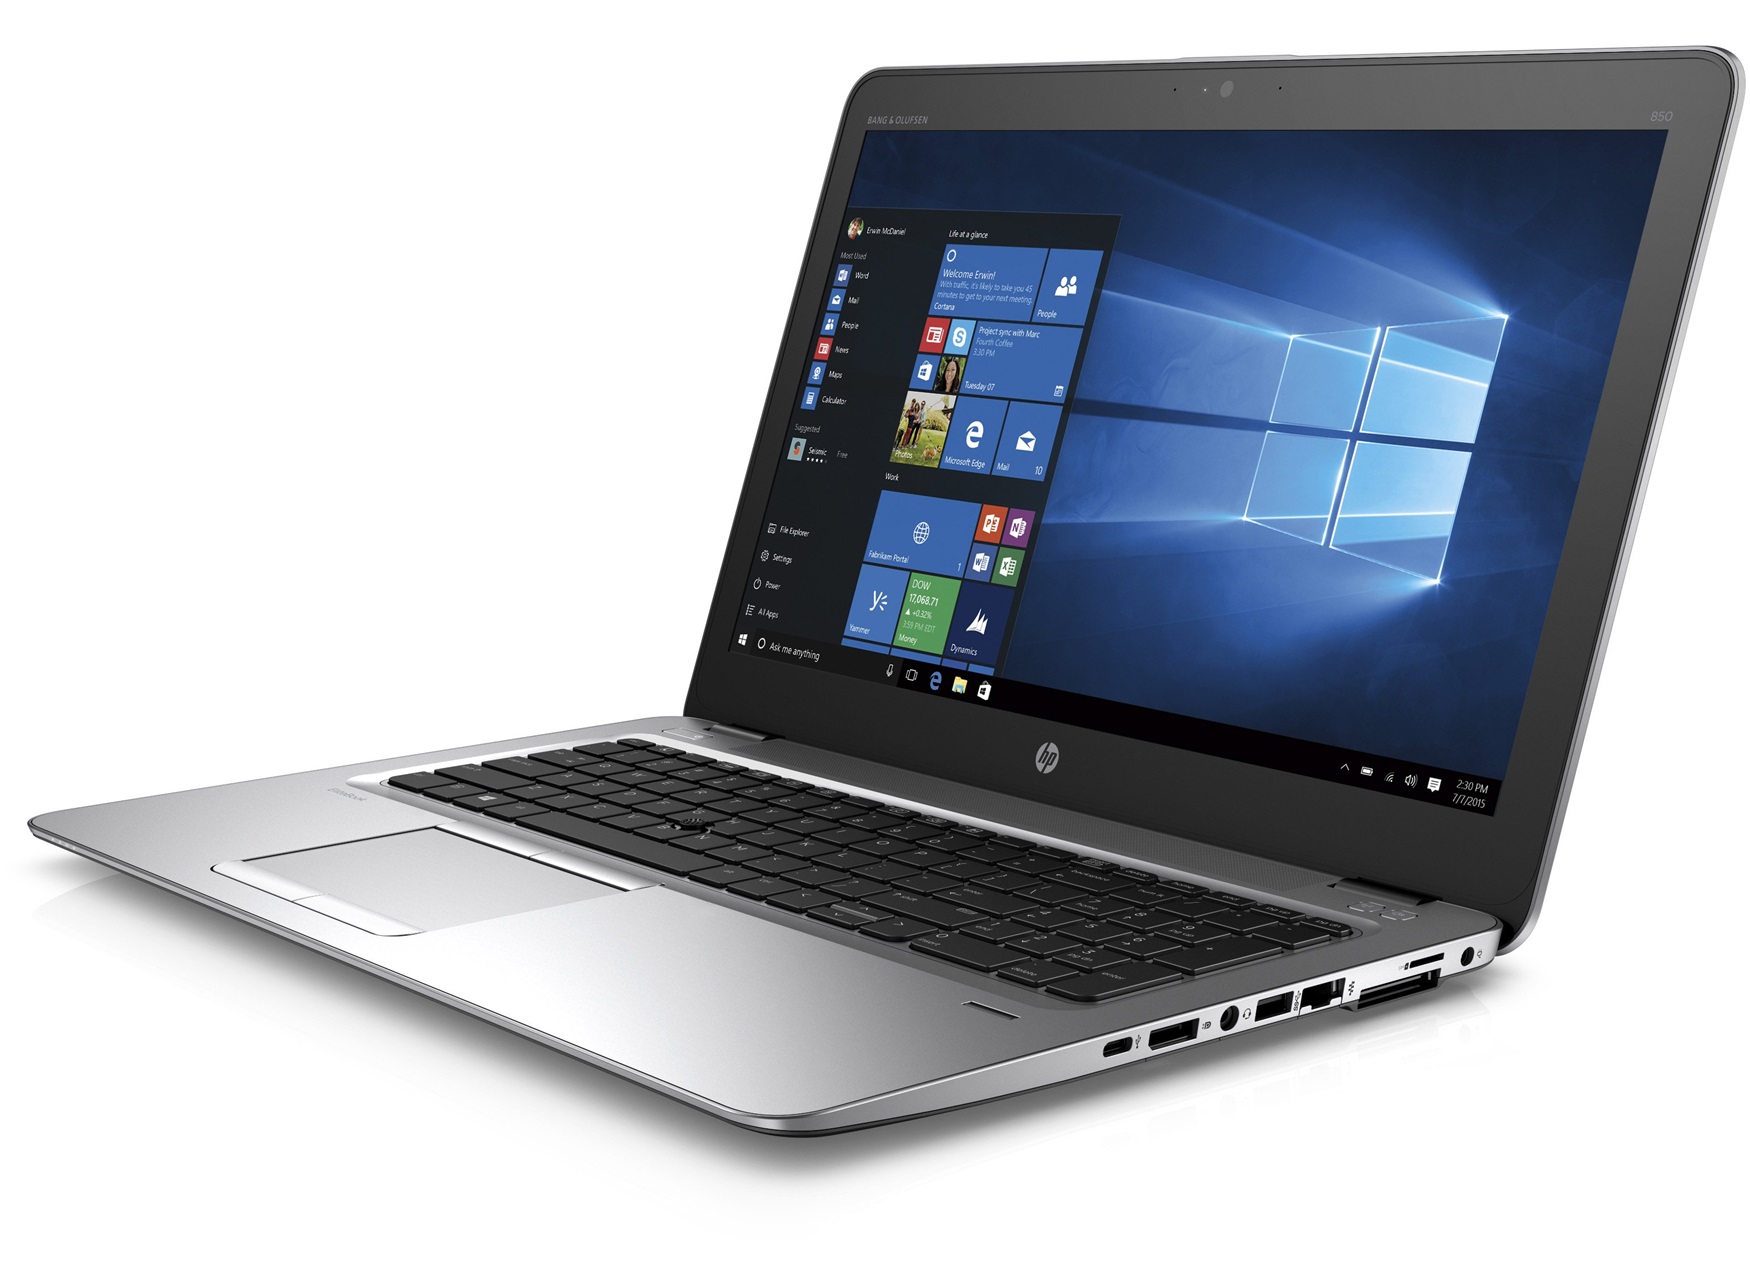 HP EliteBook 850 G3 Notebook Review - NotebookCheck.net Reviews